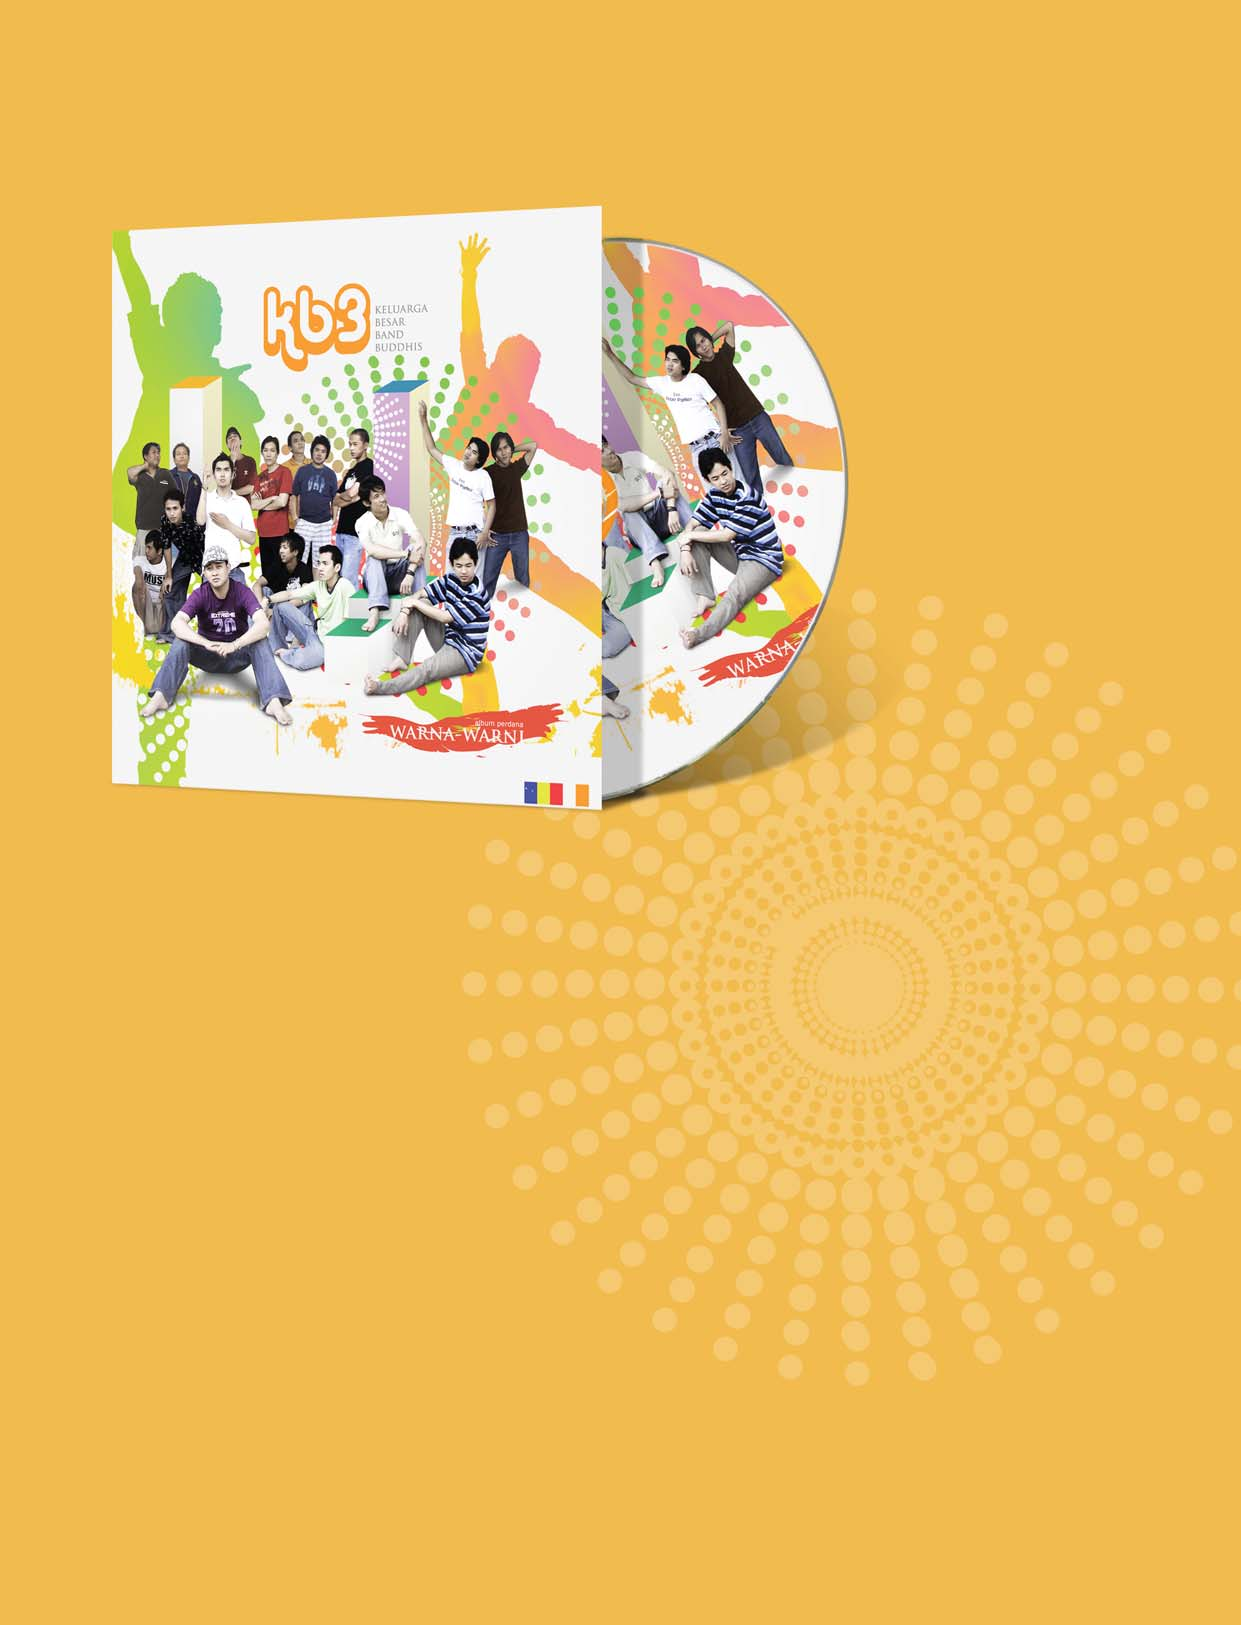 buku cd&film Judul album KB3 Warna warni Penyanyi Gandhabba The Relic Bupet